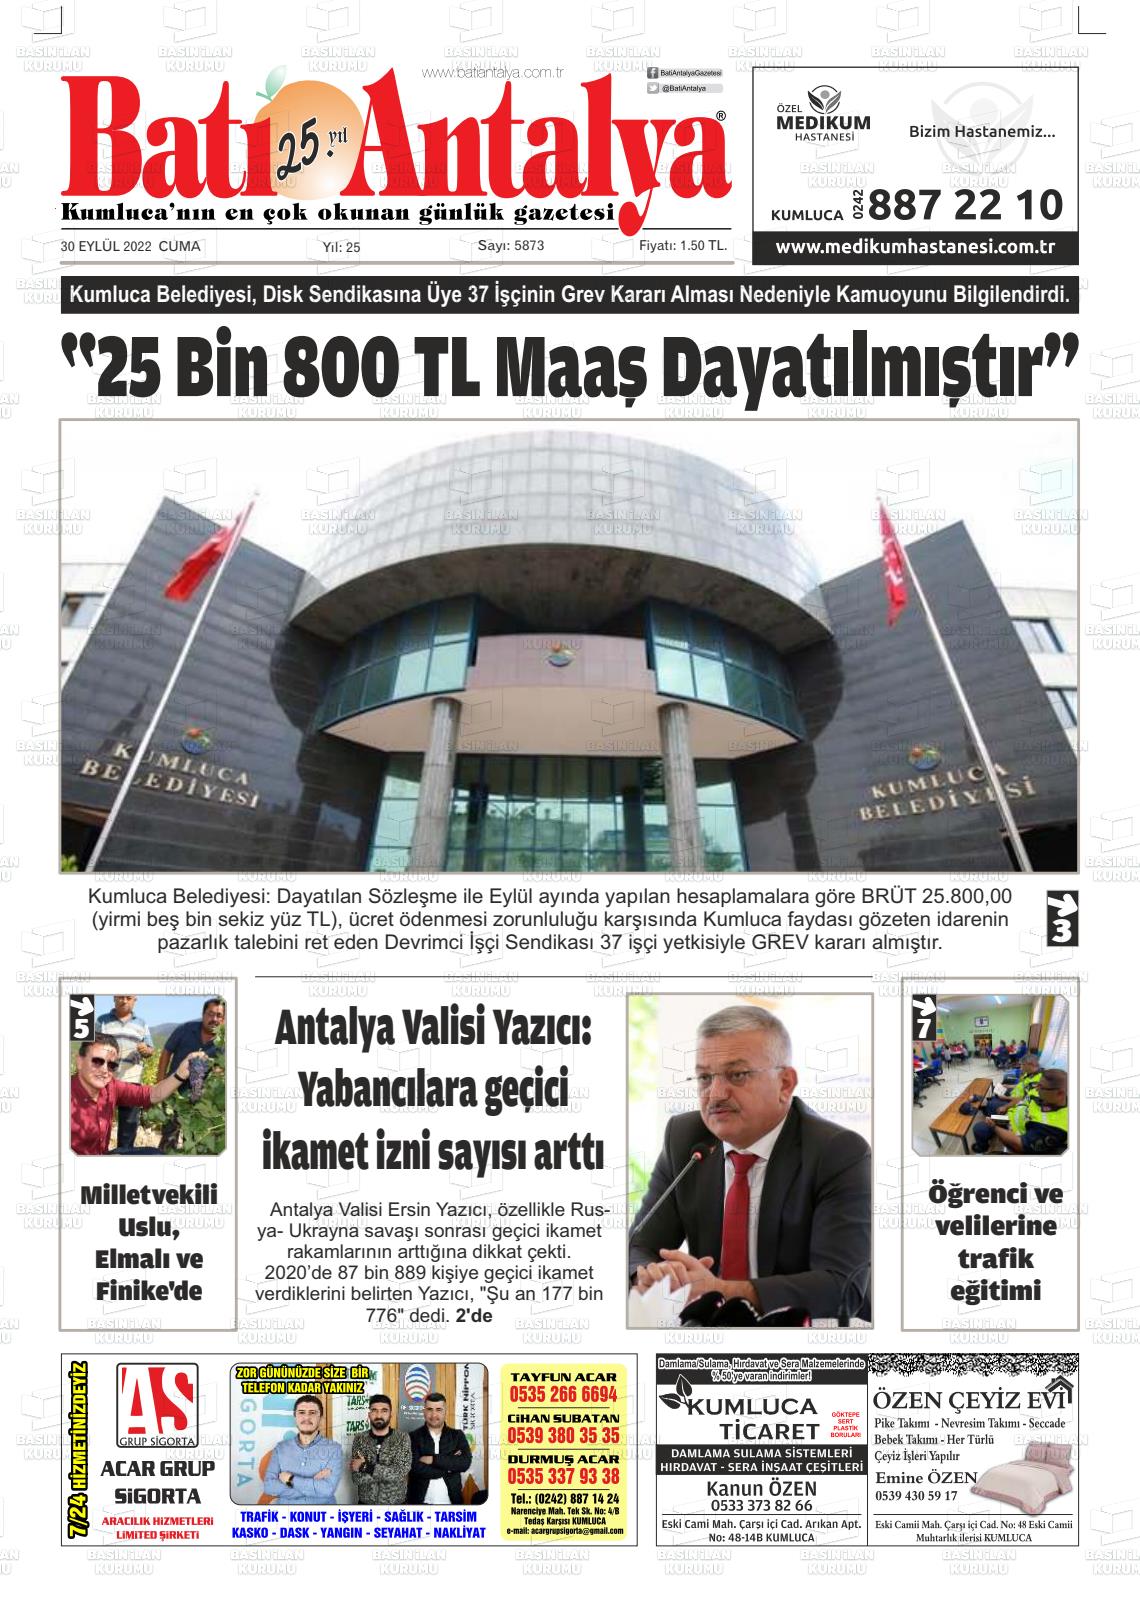 30 Eylül 2022 Batı Antalya Gazete Manşeti